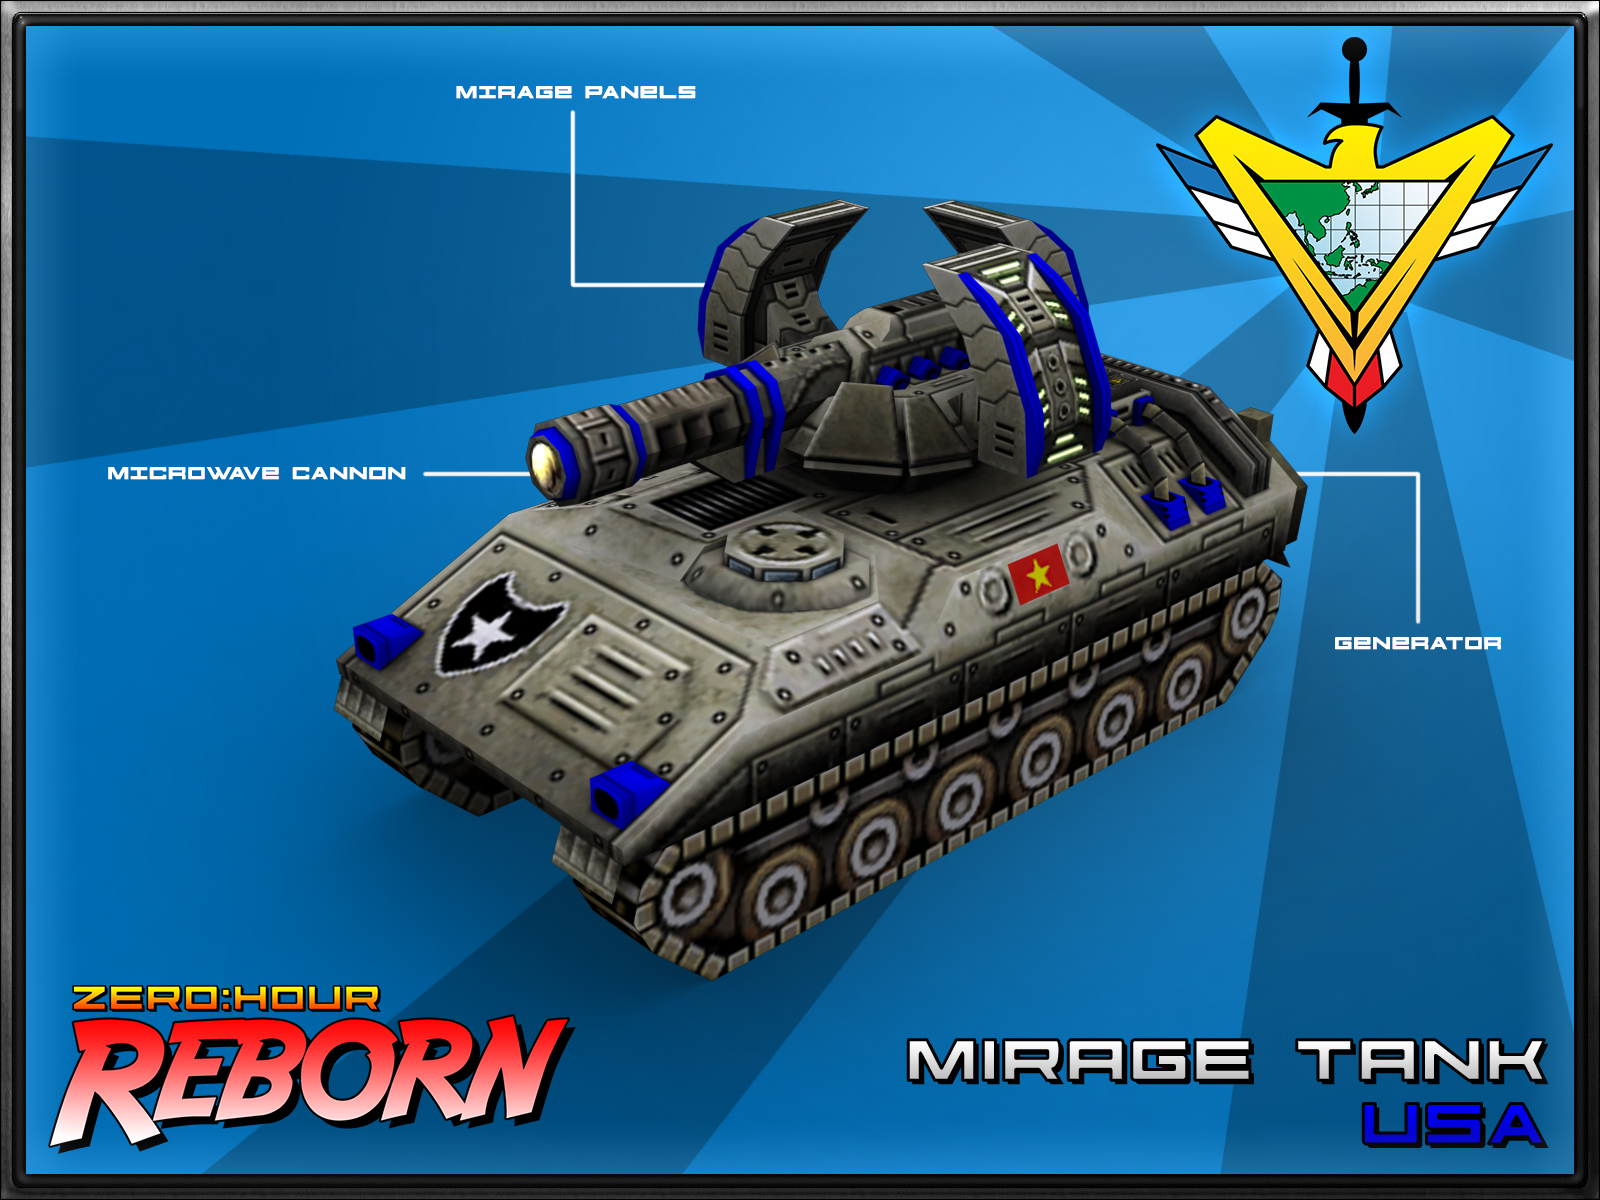 Mirage Tank Render Final